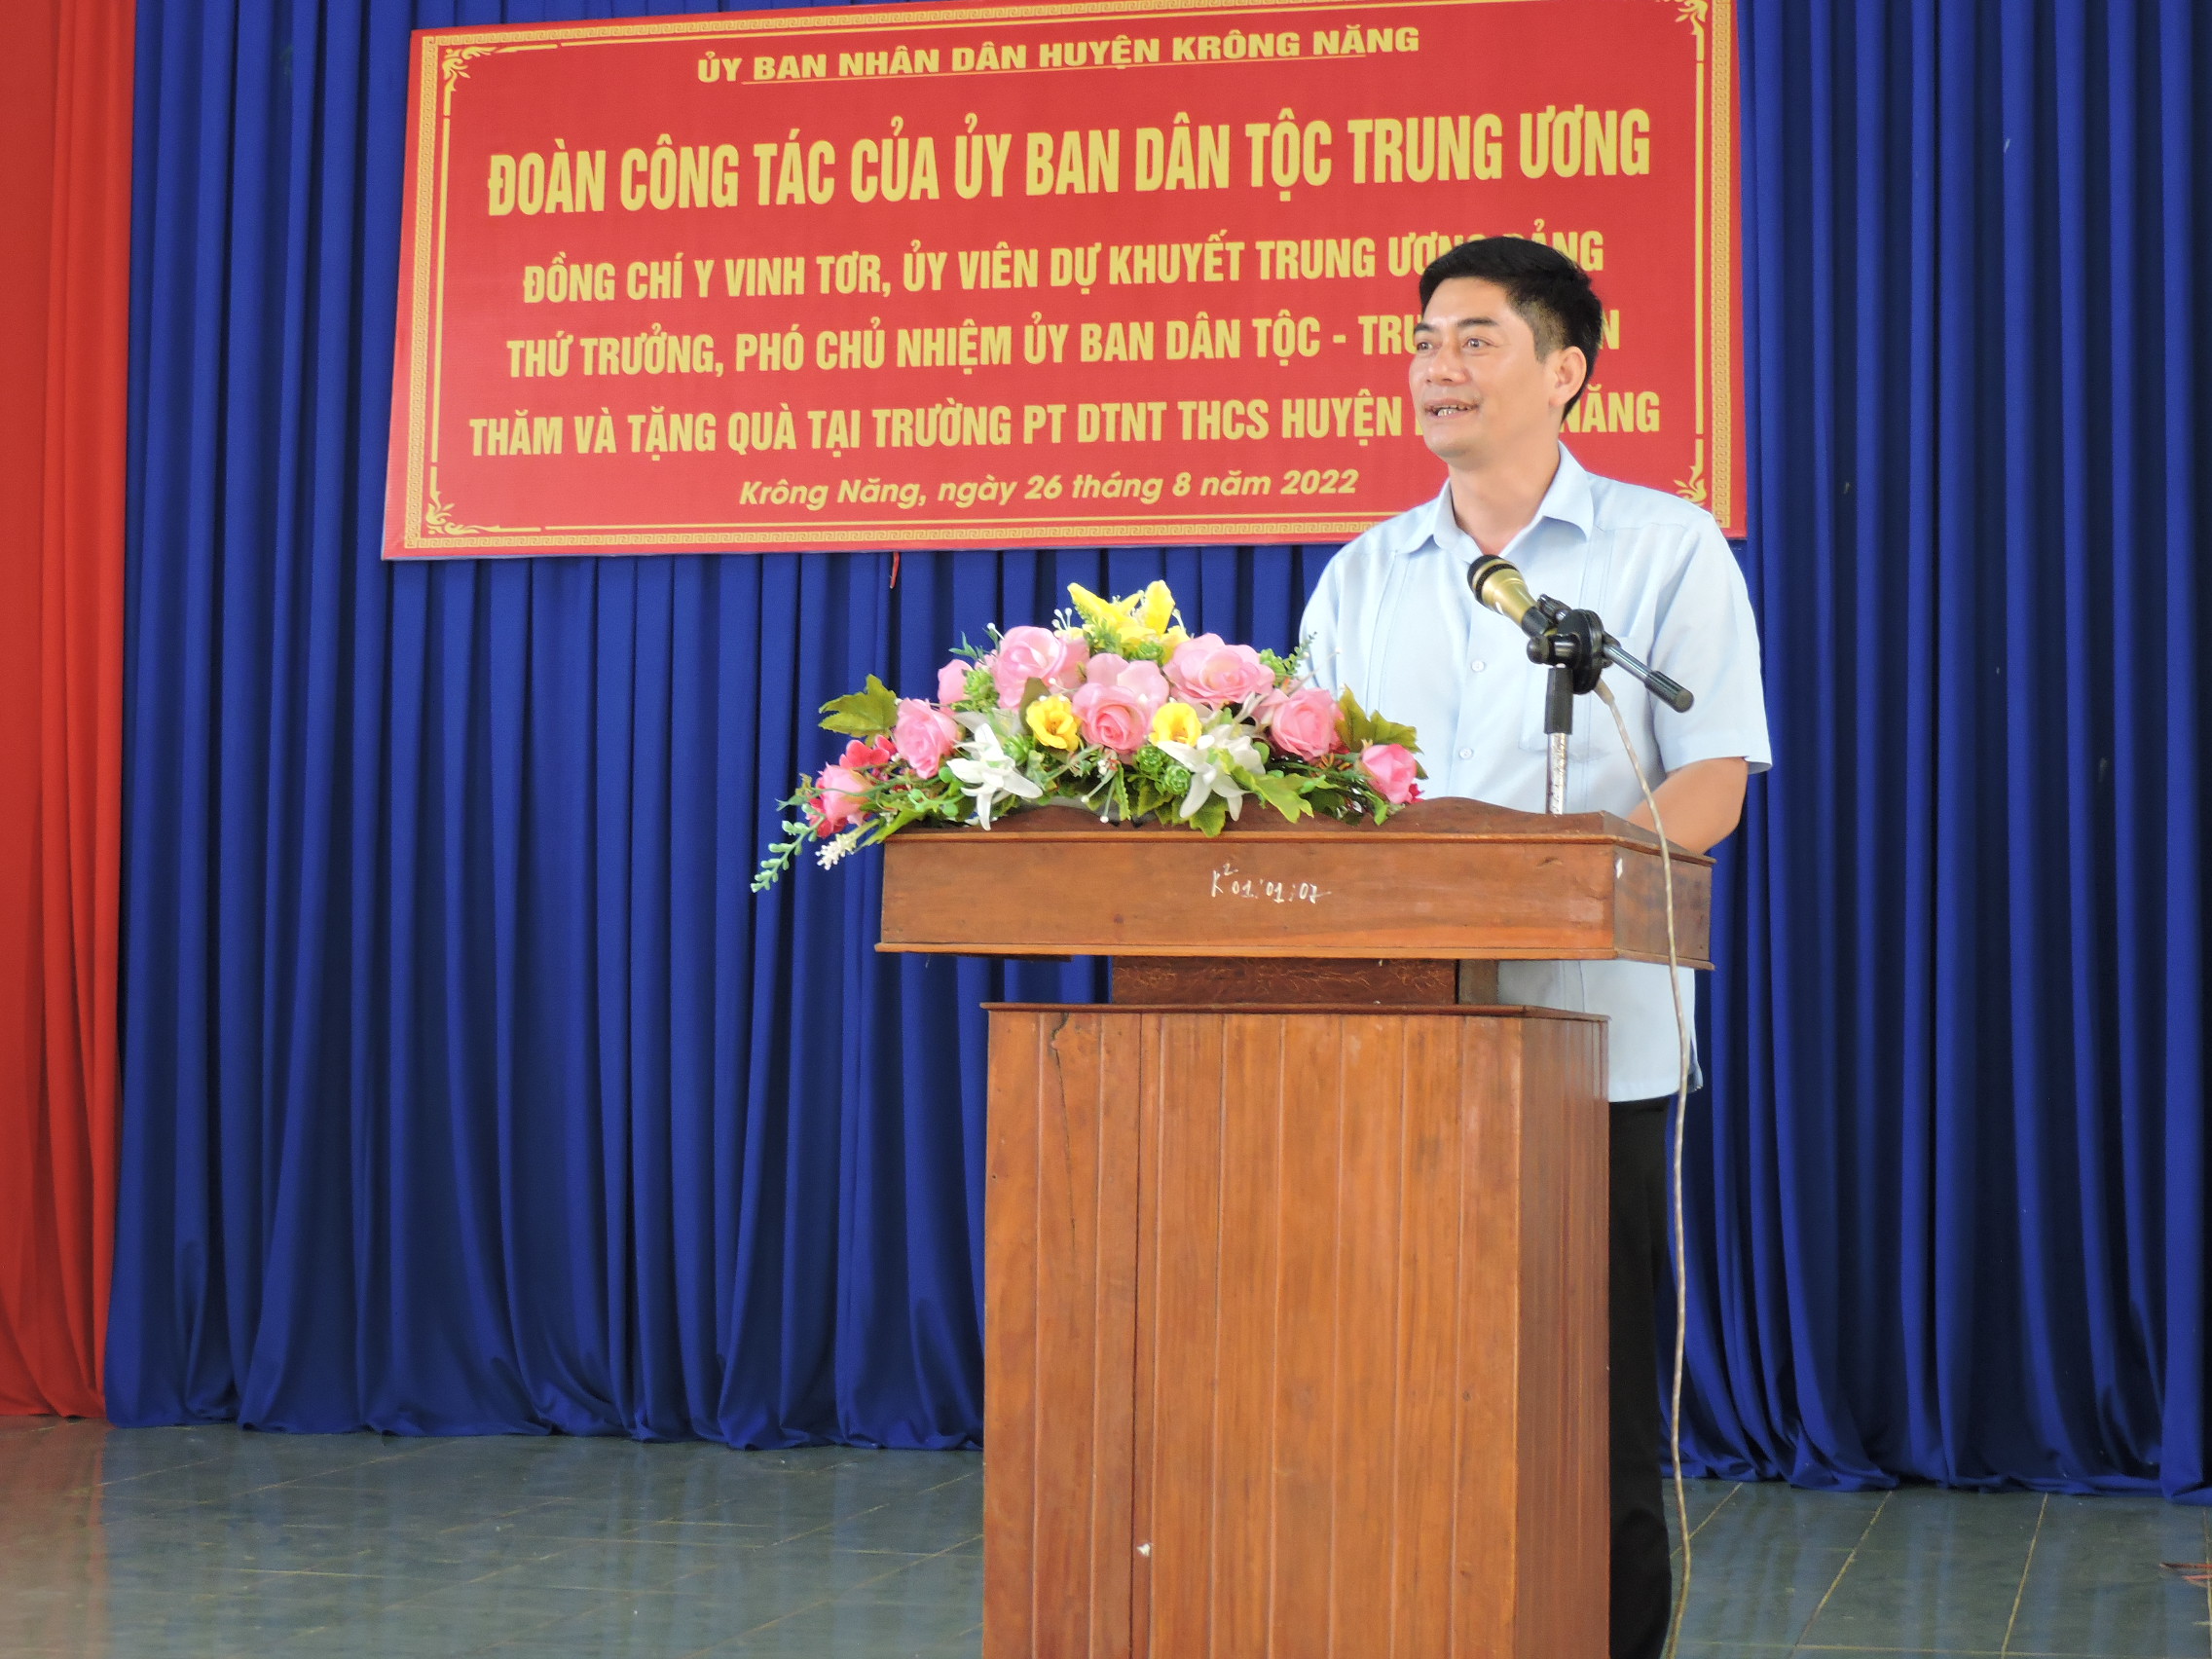 Thứ trưởng, Phó Chủ nhiệm UBDT Trung ương Y Vinh Tơr thăm, tặng quà tại Trường PTDT Nội trú Huyện Krông Năng